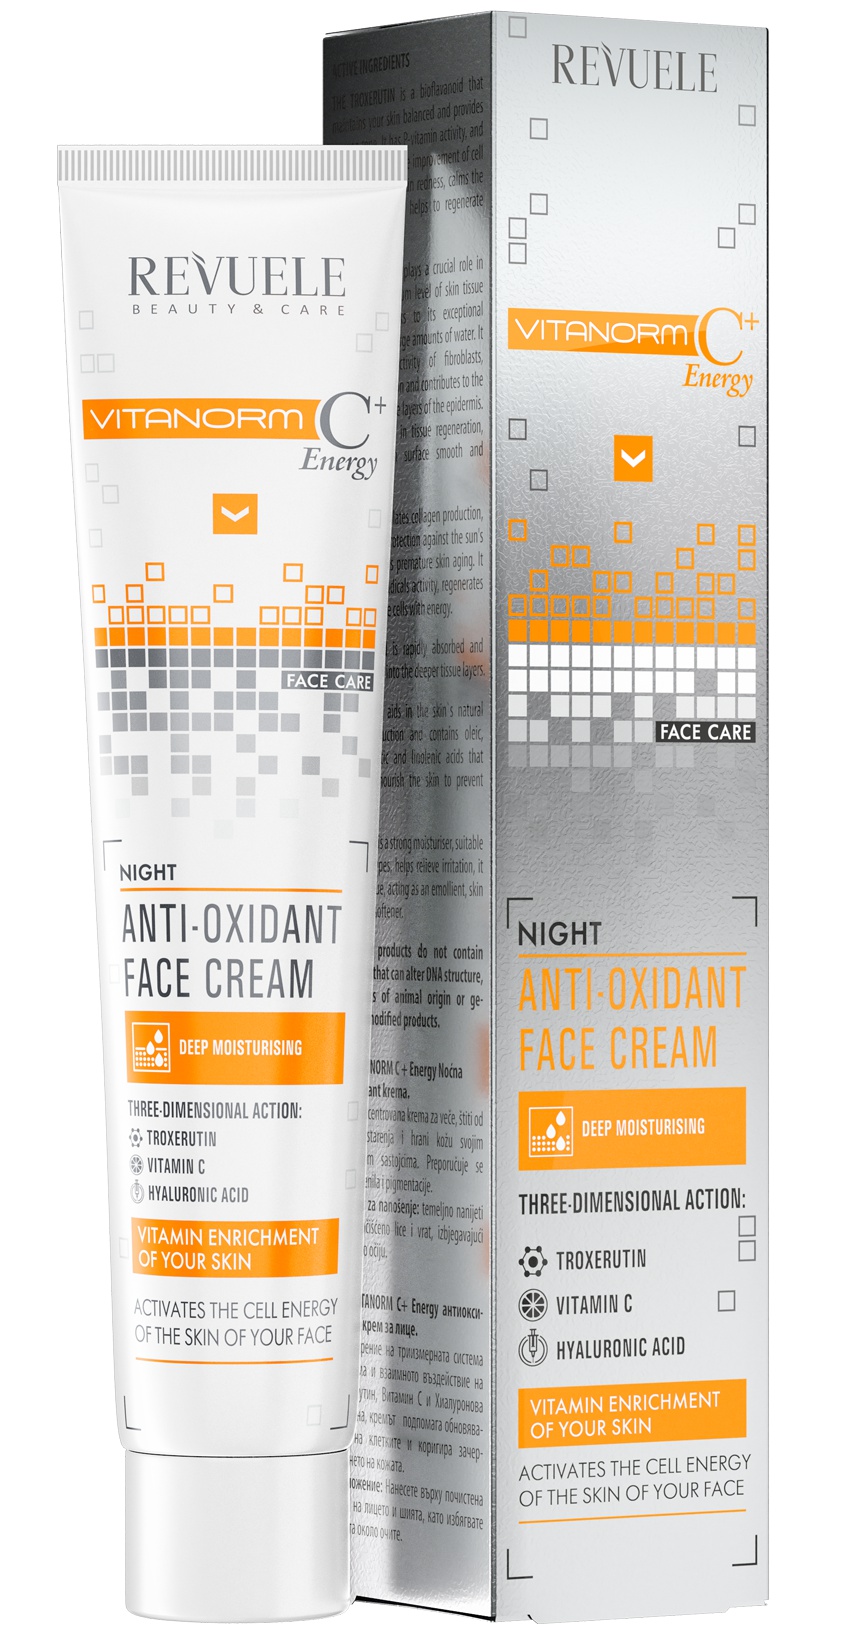 Revuele Vitanorm C+ Energy Night Antioxidant Face Cream